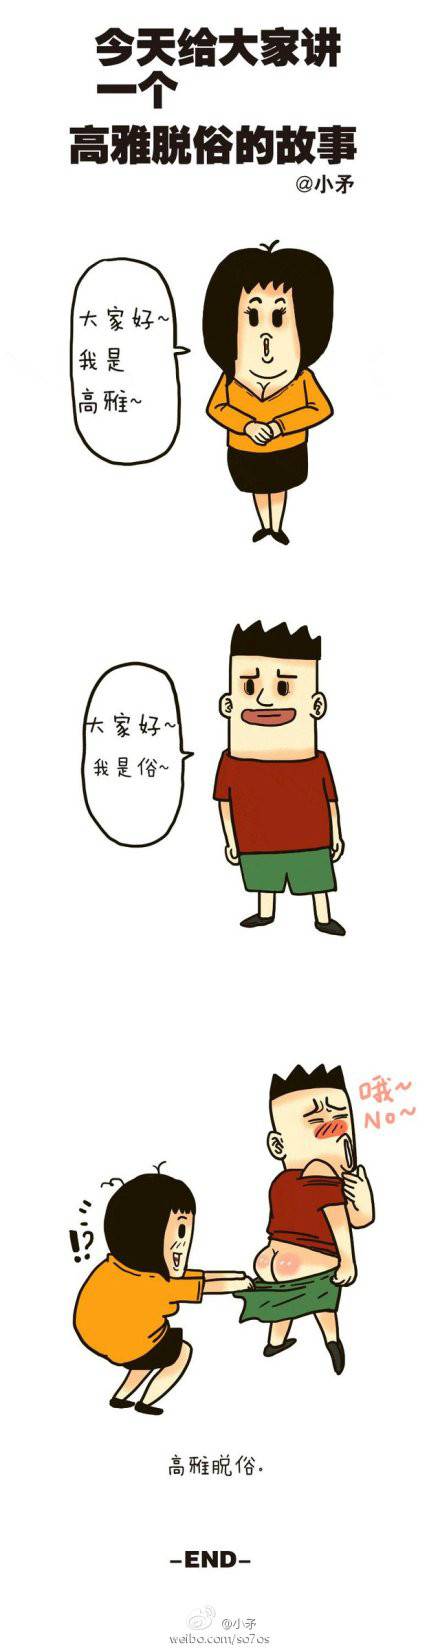 邪恶漫画爆笑囧图第356刊：诱惑